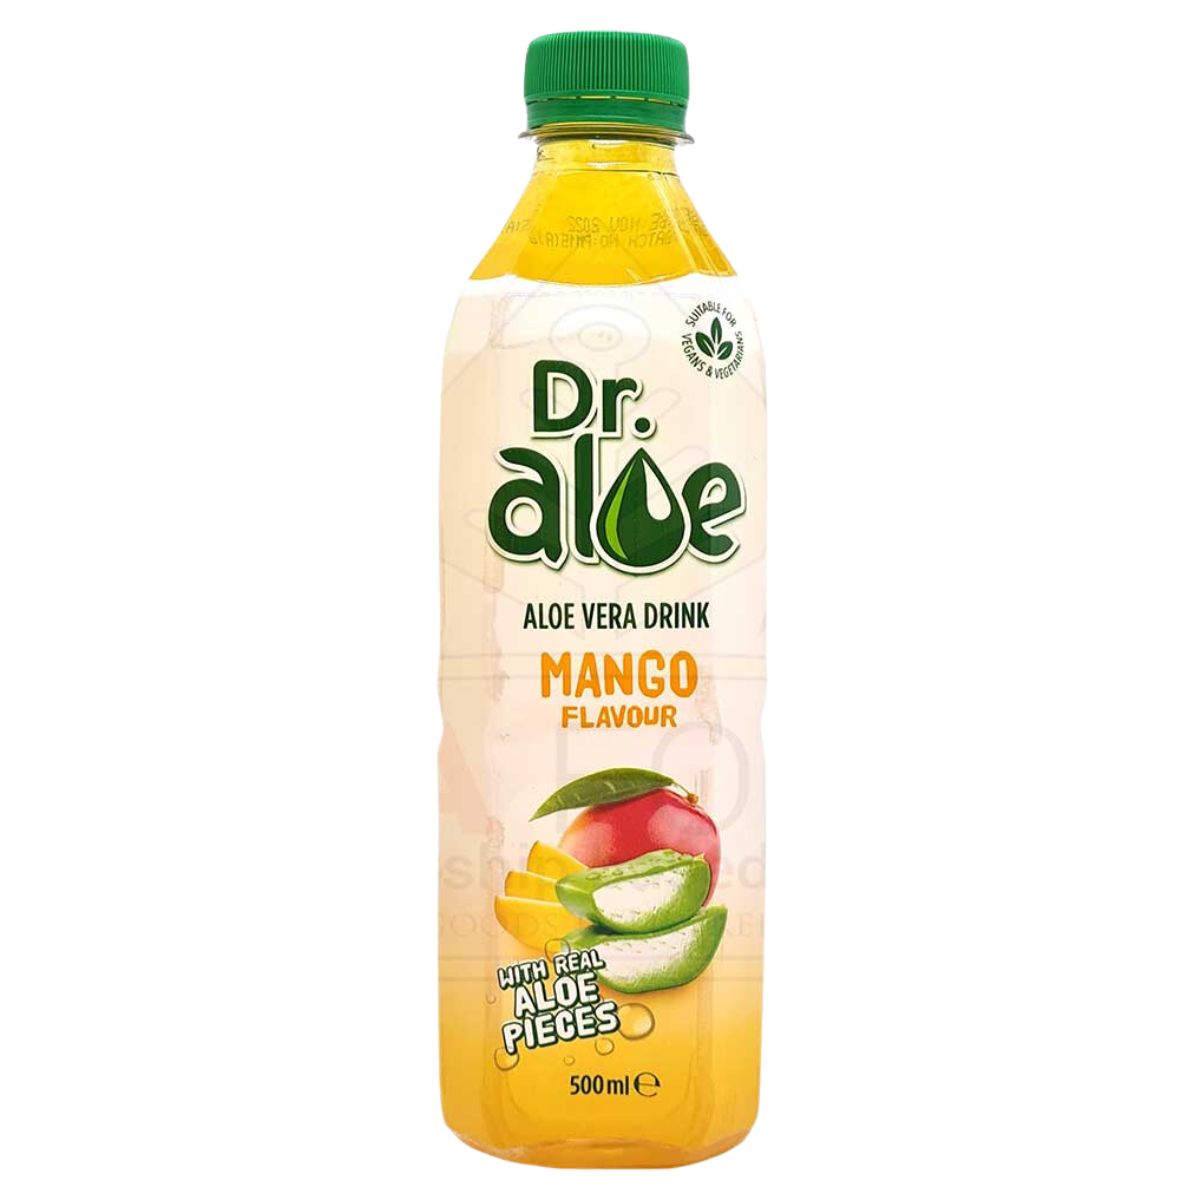 A bottle of Dr Aloe - Aloe Vera Mango Drink - 500ml.